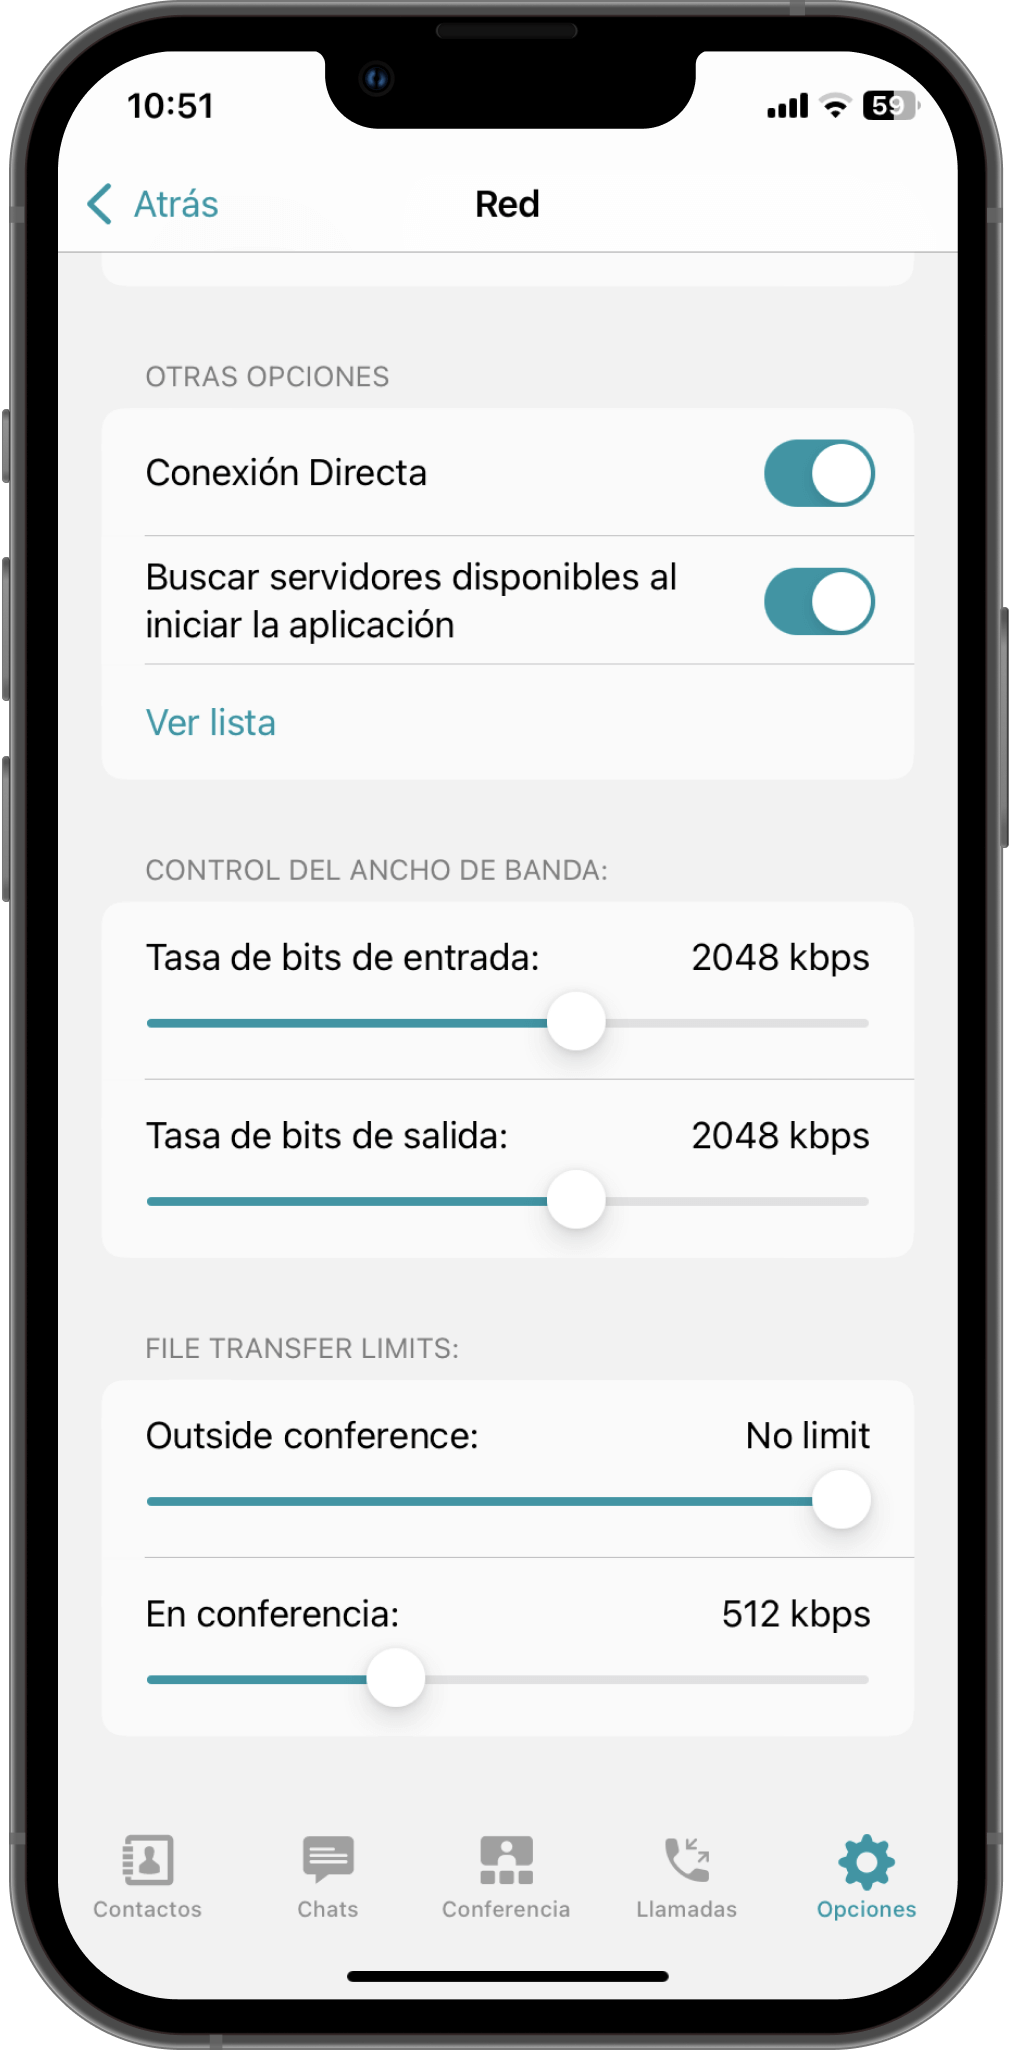 TrueConf 3.4.3 para iOS: Fácil inicio del marcador, indicador de micrófono deshabilitado y menú de opciones actualizado 6